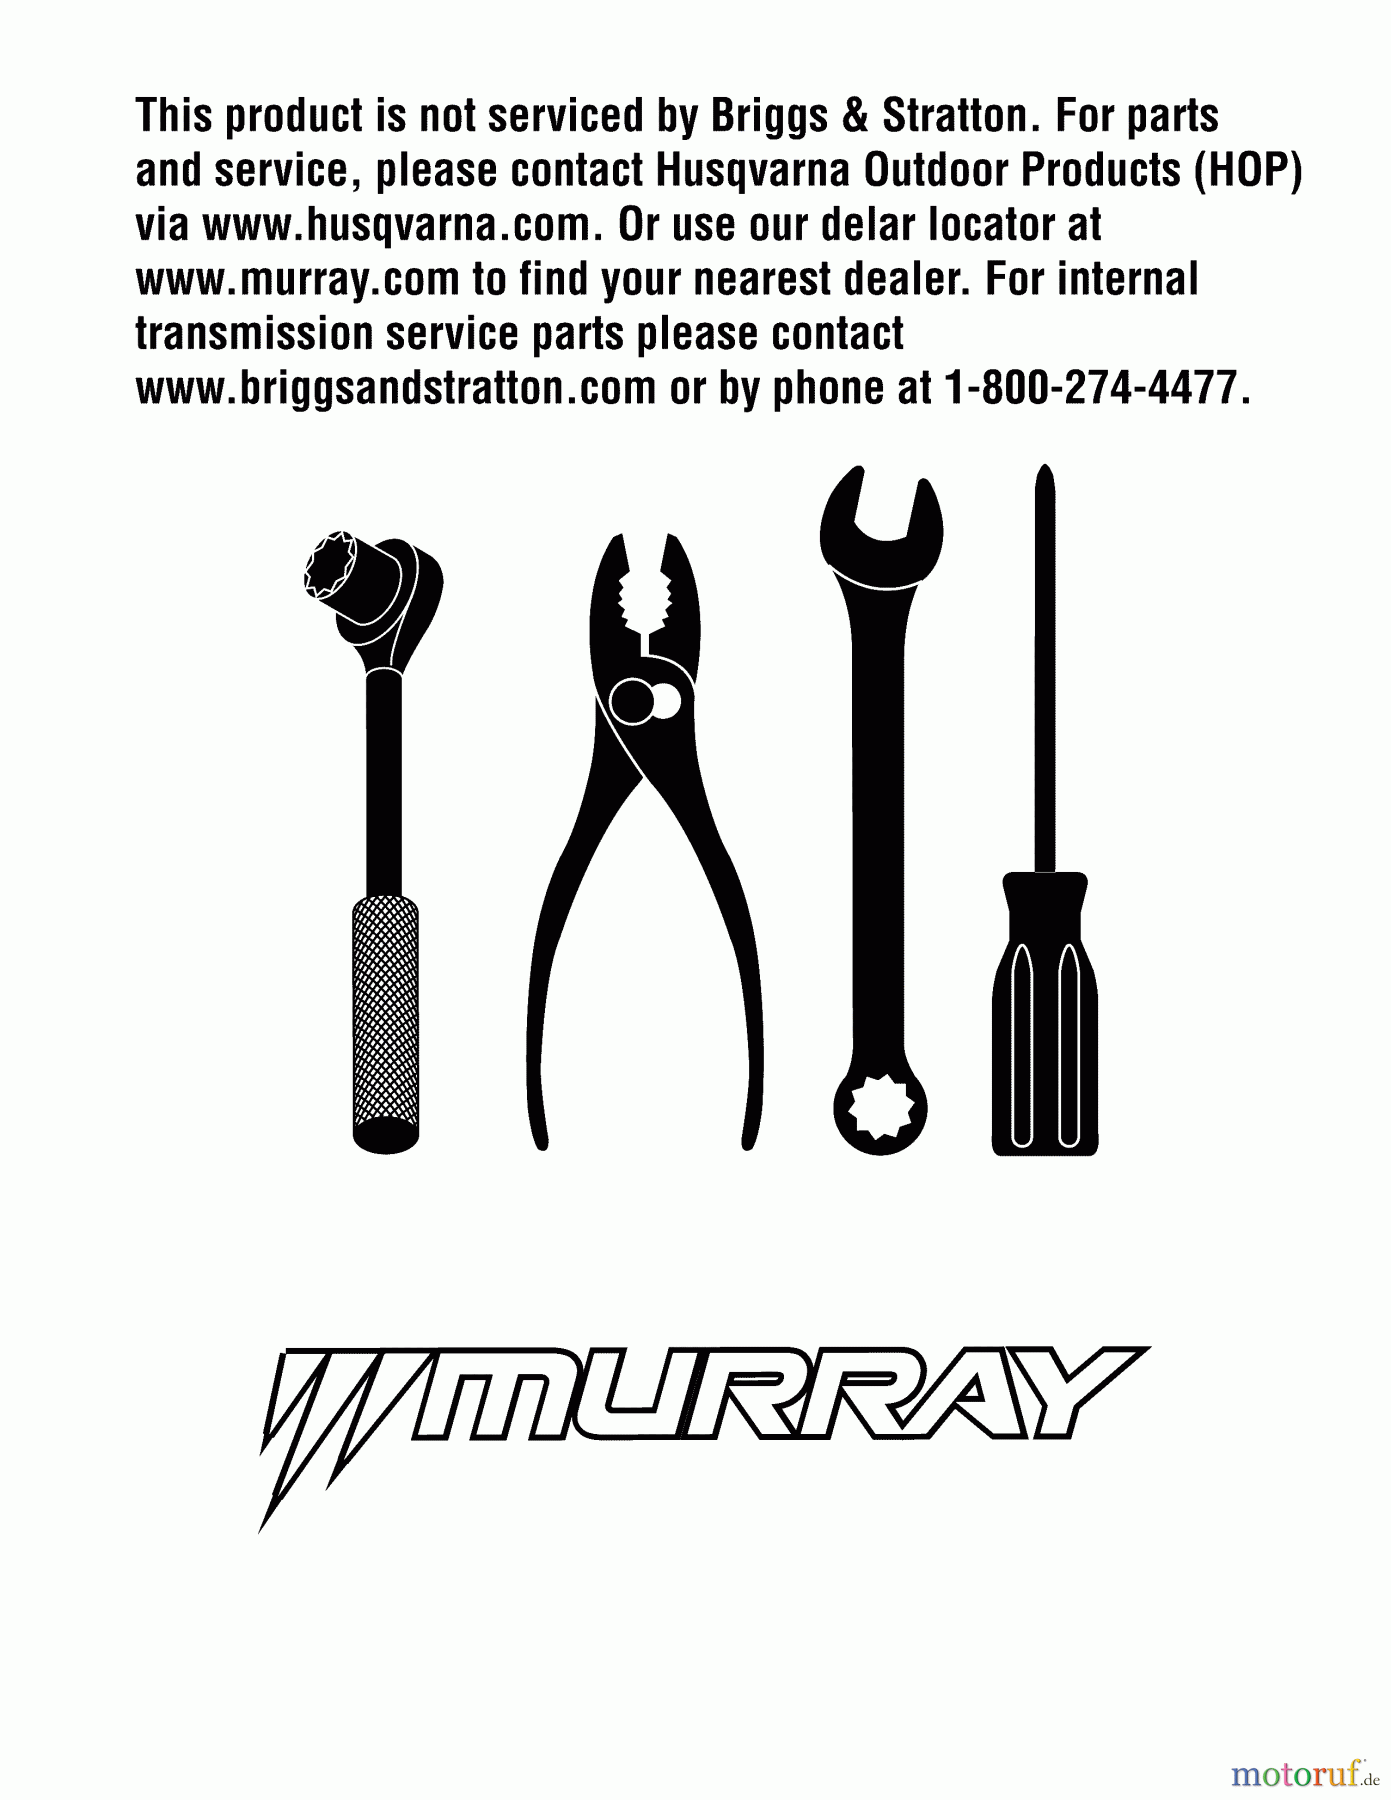  Murray Rasenmäher M20300 (96114002402) - Murray 20 